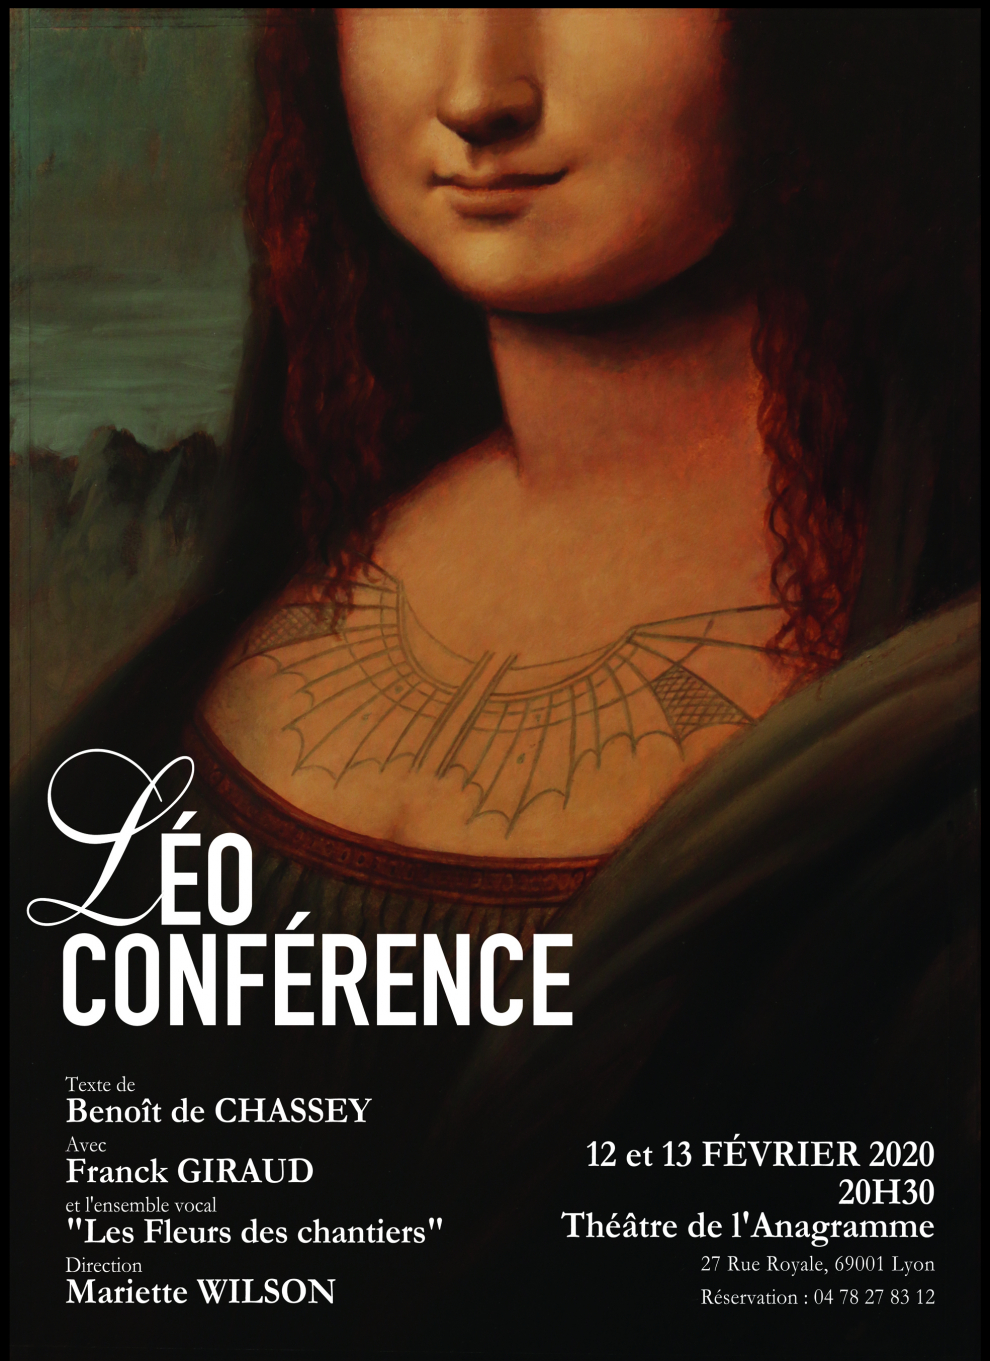 Léo Conférence